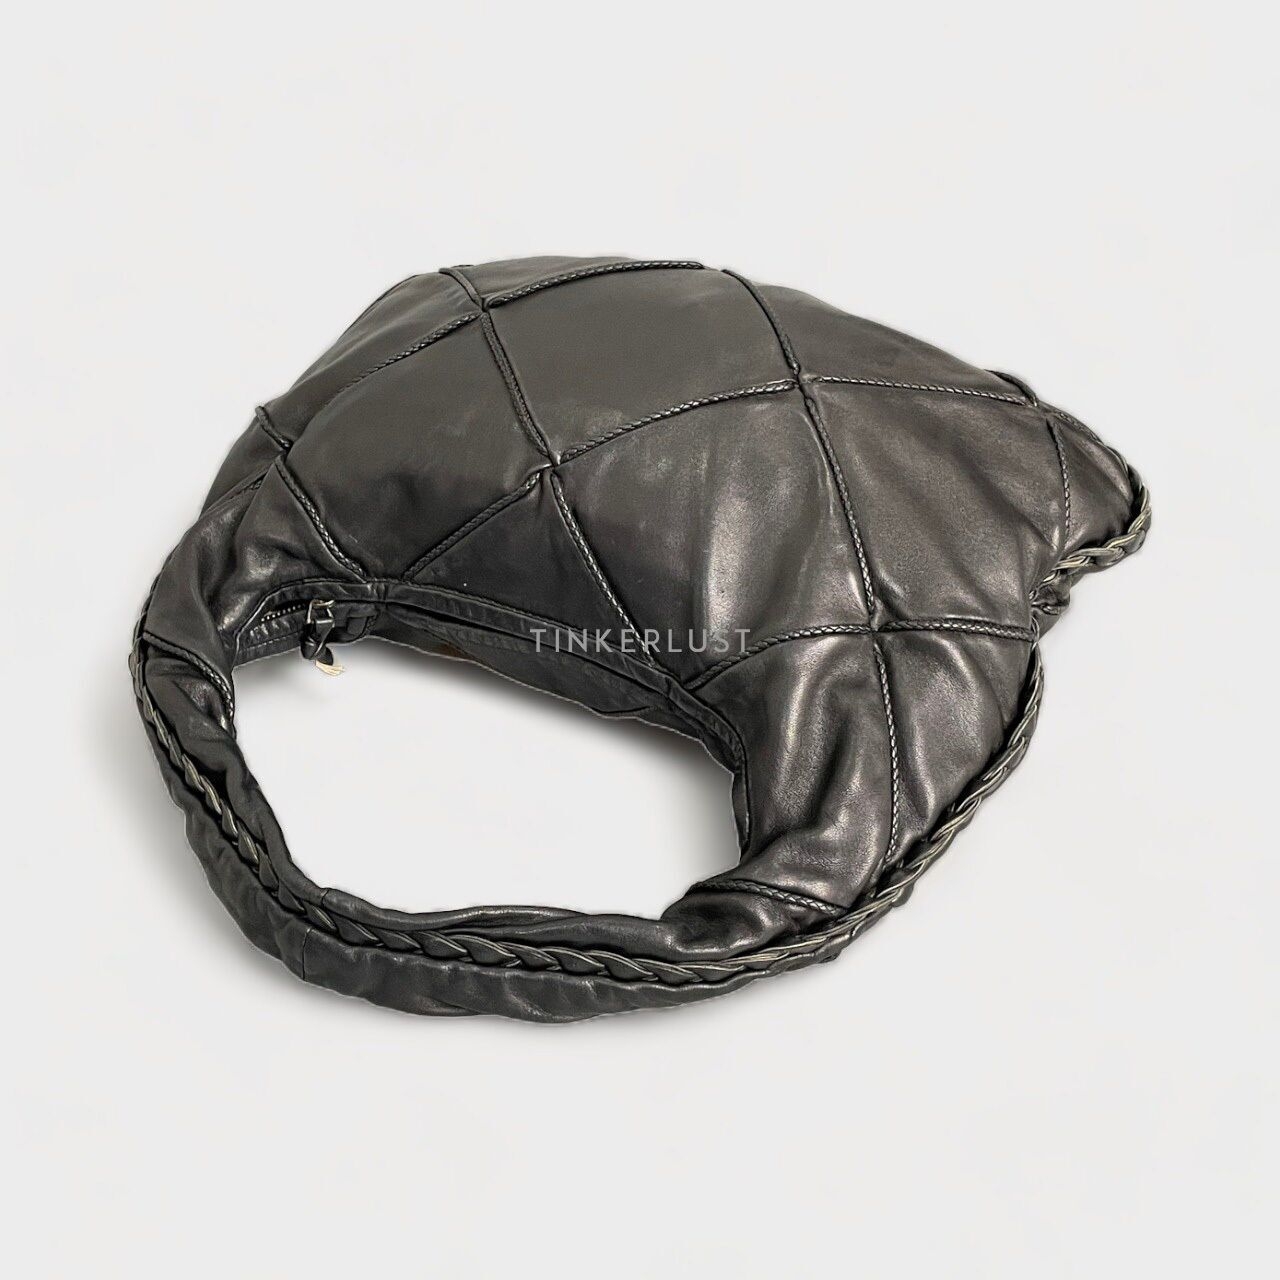 Bottega Veneta Intrecciato Black Leather Hobo Bag